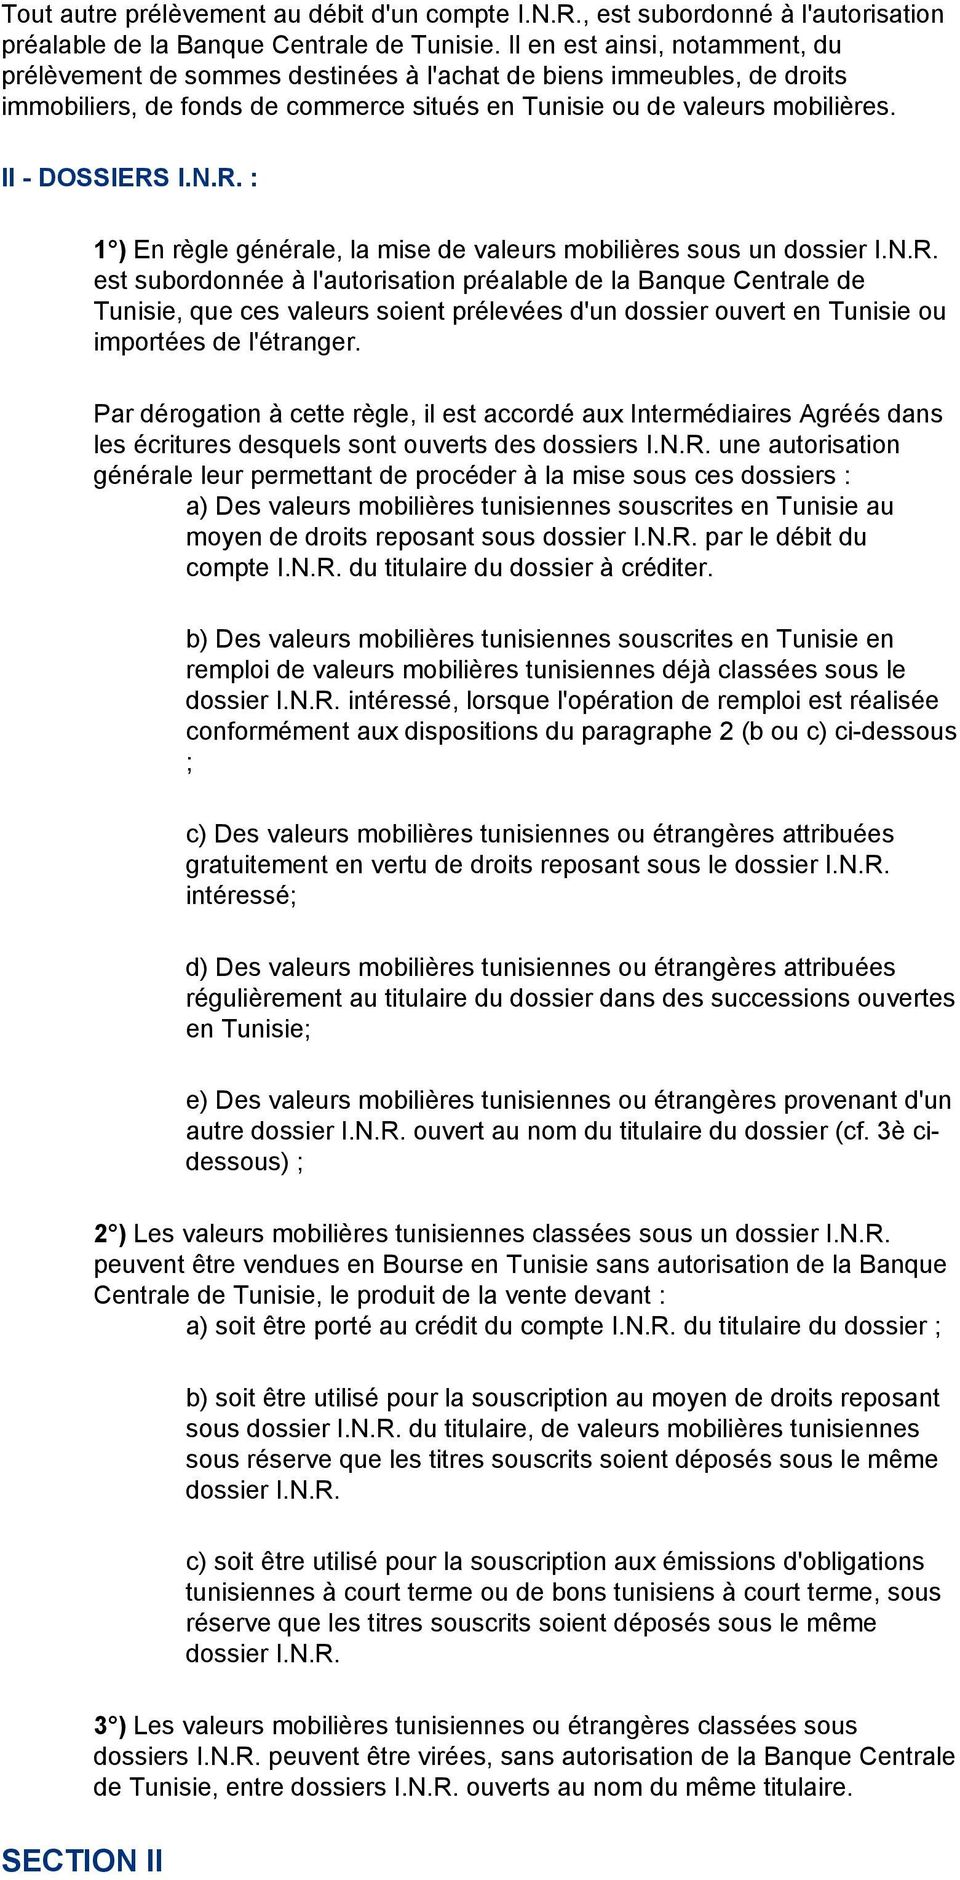 R. : 1 ) En règle générale, la mise de valeurs mobilières sous un dossier I.N.R. est subordonnée à l'autorisation préalable de la Banque Centrale de Tunisie, que ces valeurs soient prélevées d'un dossier ouvert en Tunisie ou importées de l'étranger.